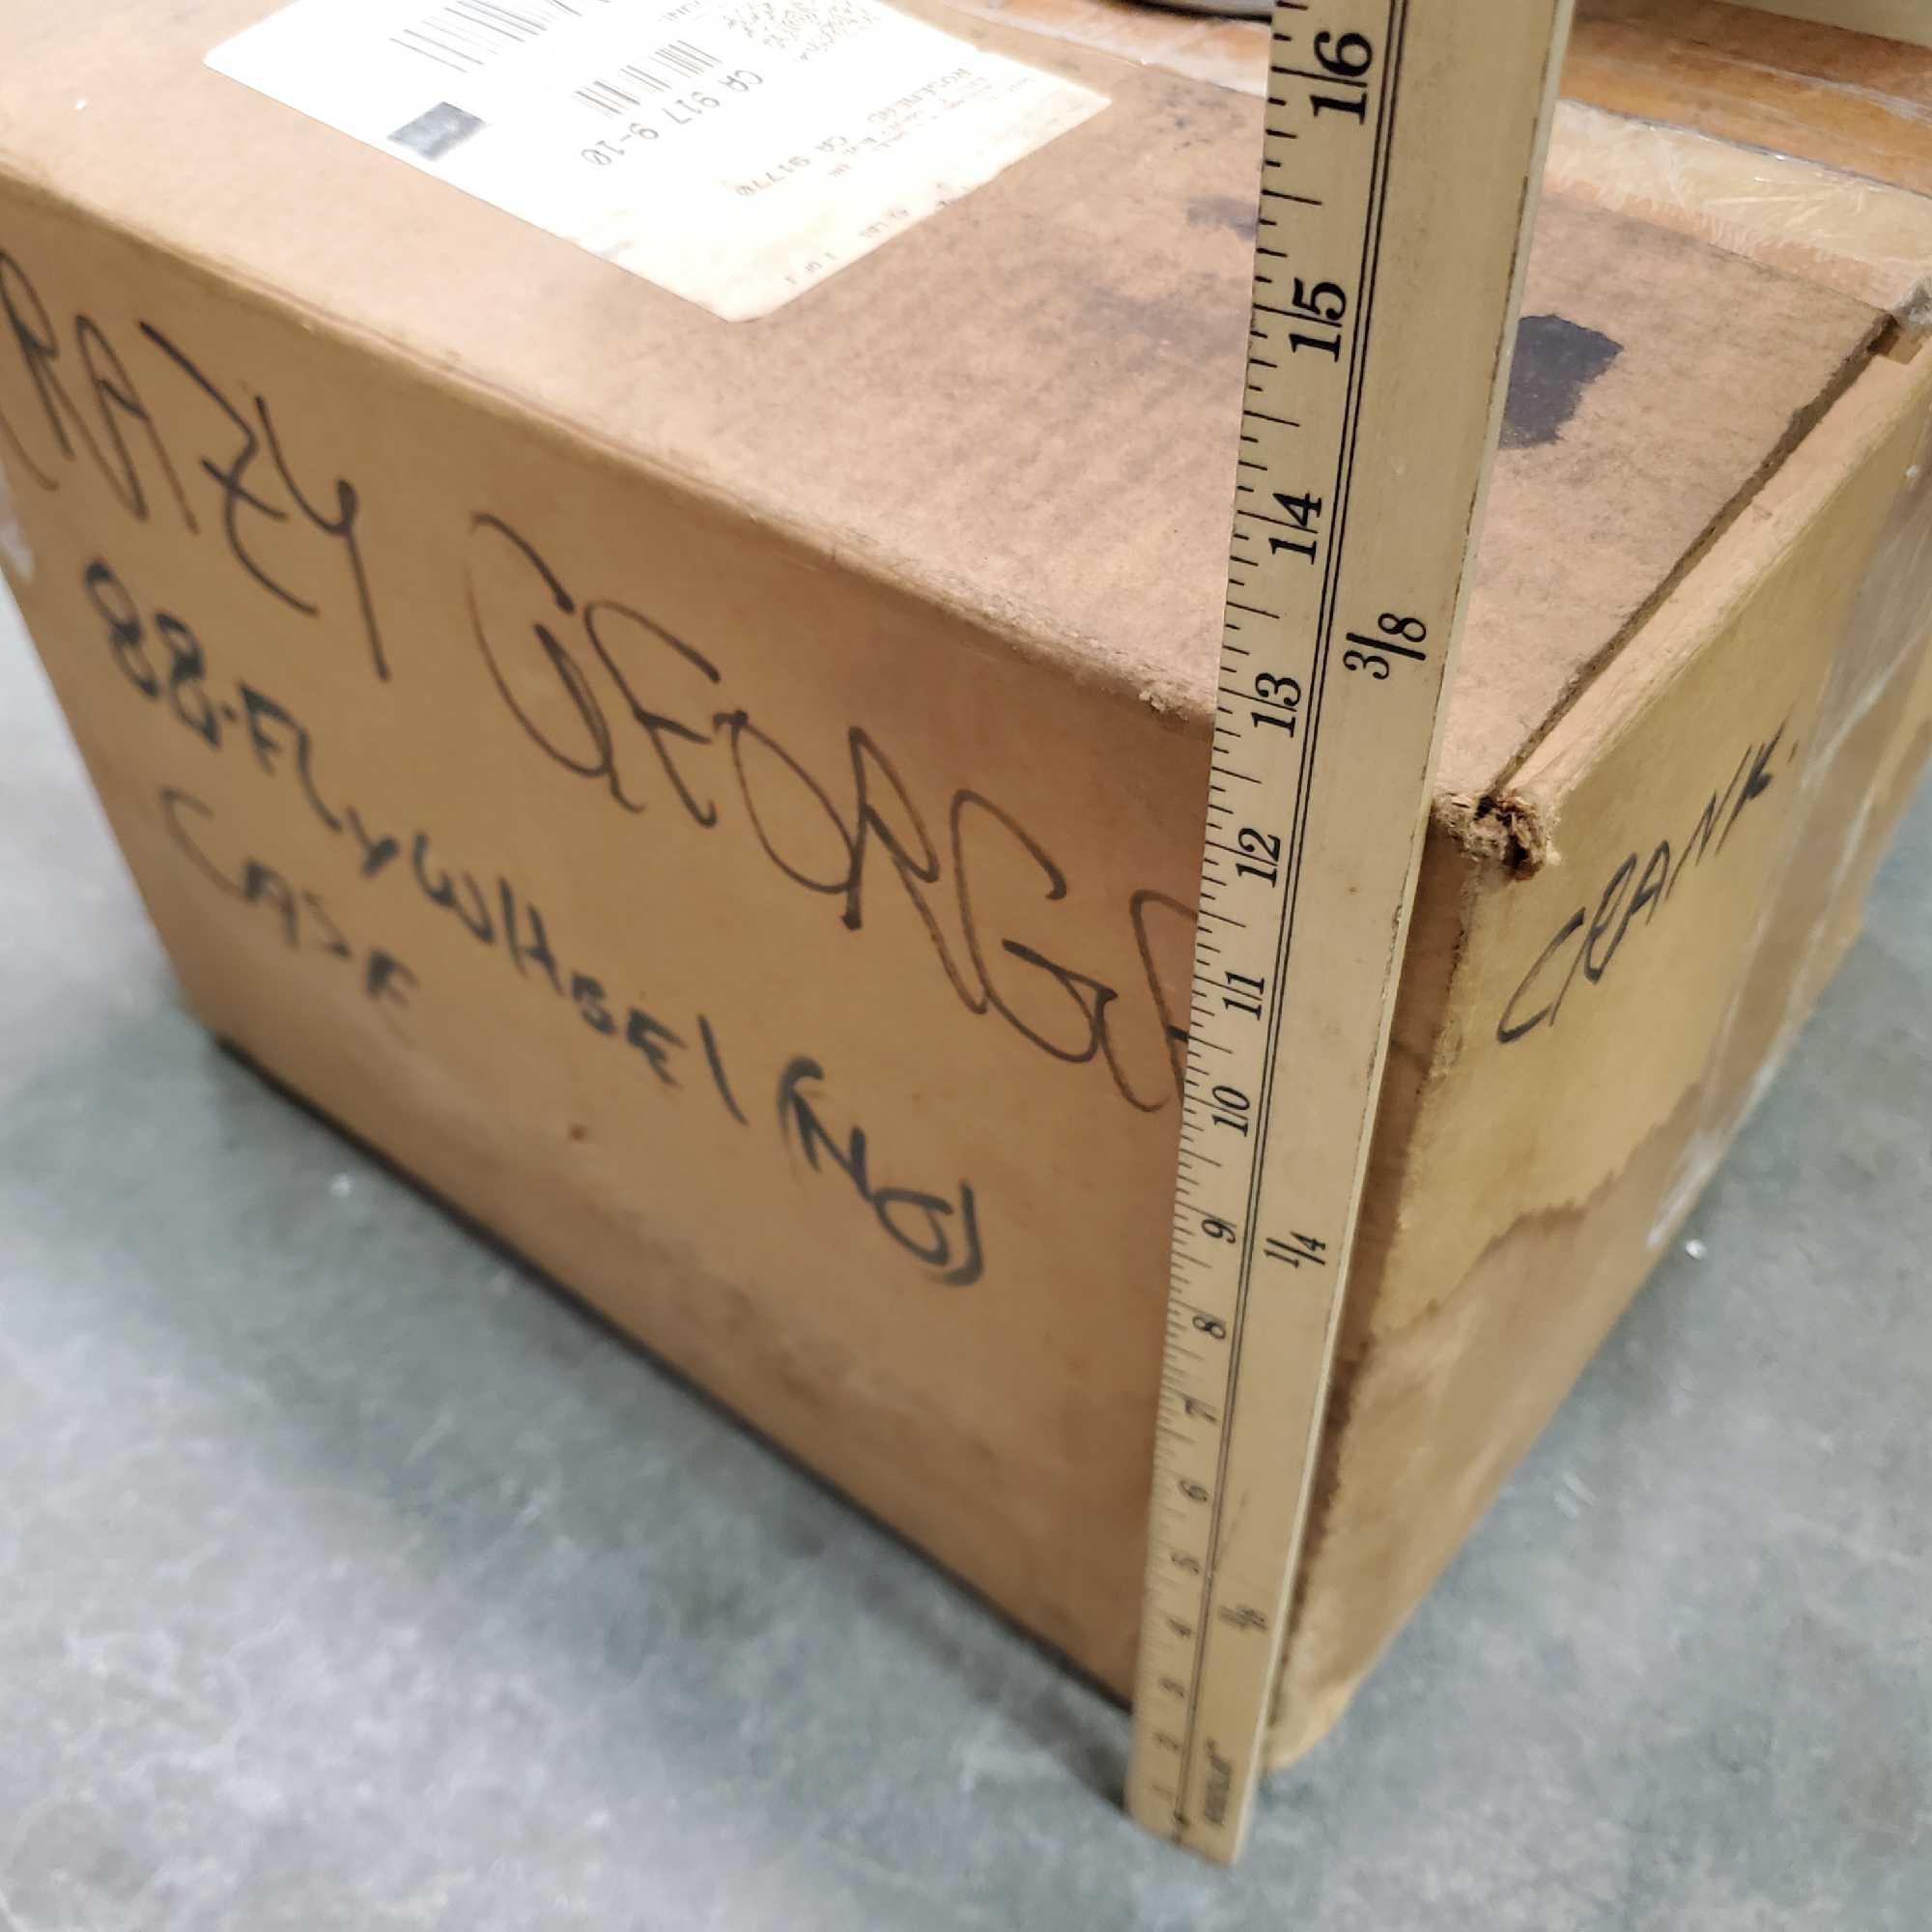 Box of Harley Davidson 88-flywheel kit 23600-00 no case